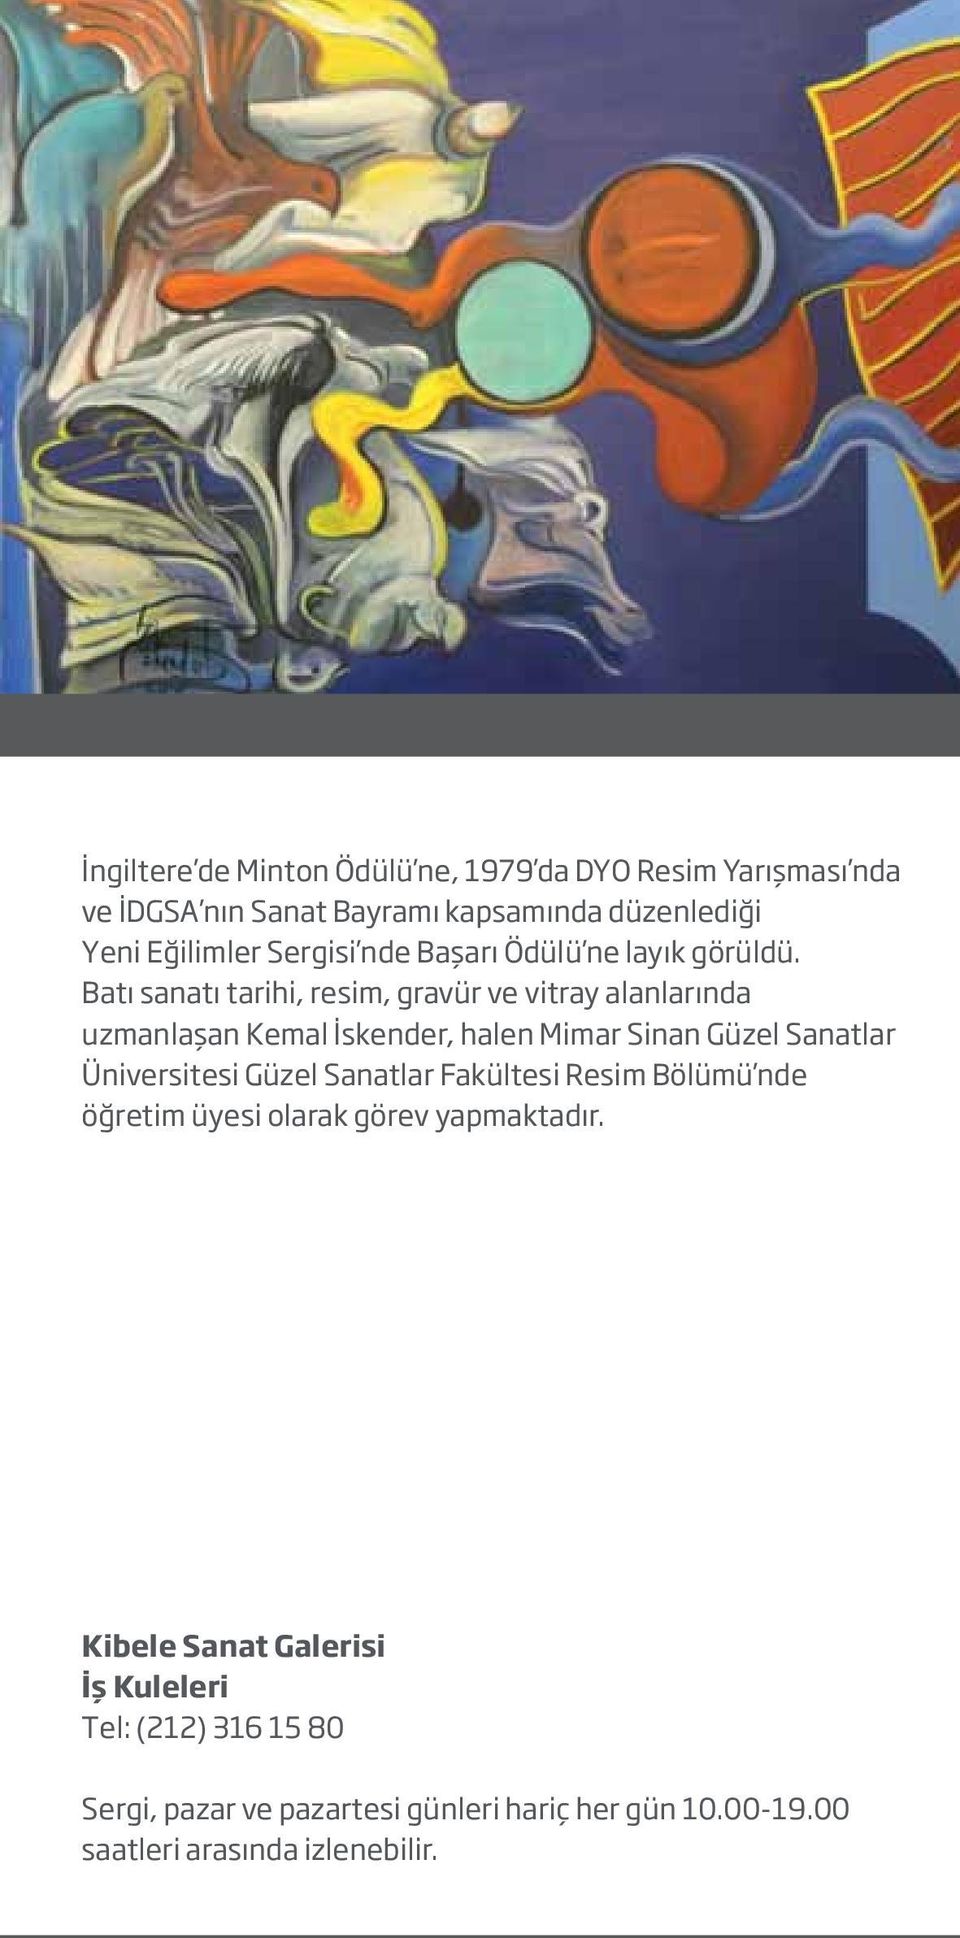 Batı sanatı tarihi, resim, gravür ve vitray alanlarında uzmanlaşan Kemal İskender, halen Mimar Sinan Güzel Sanatlar Üniversitesi